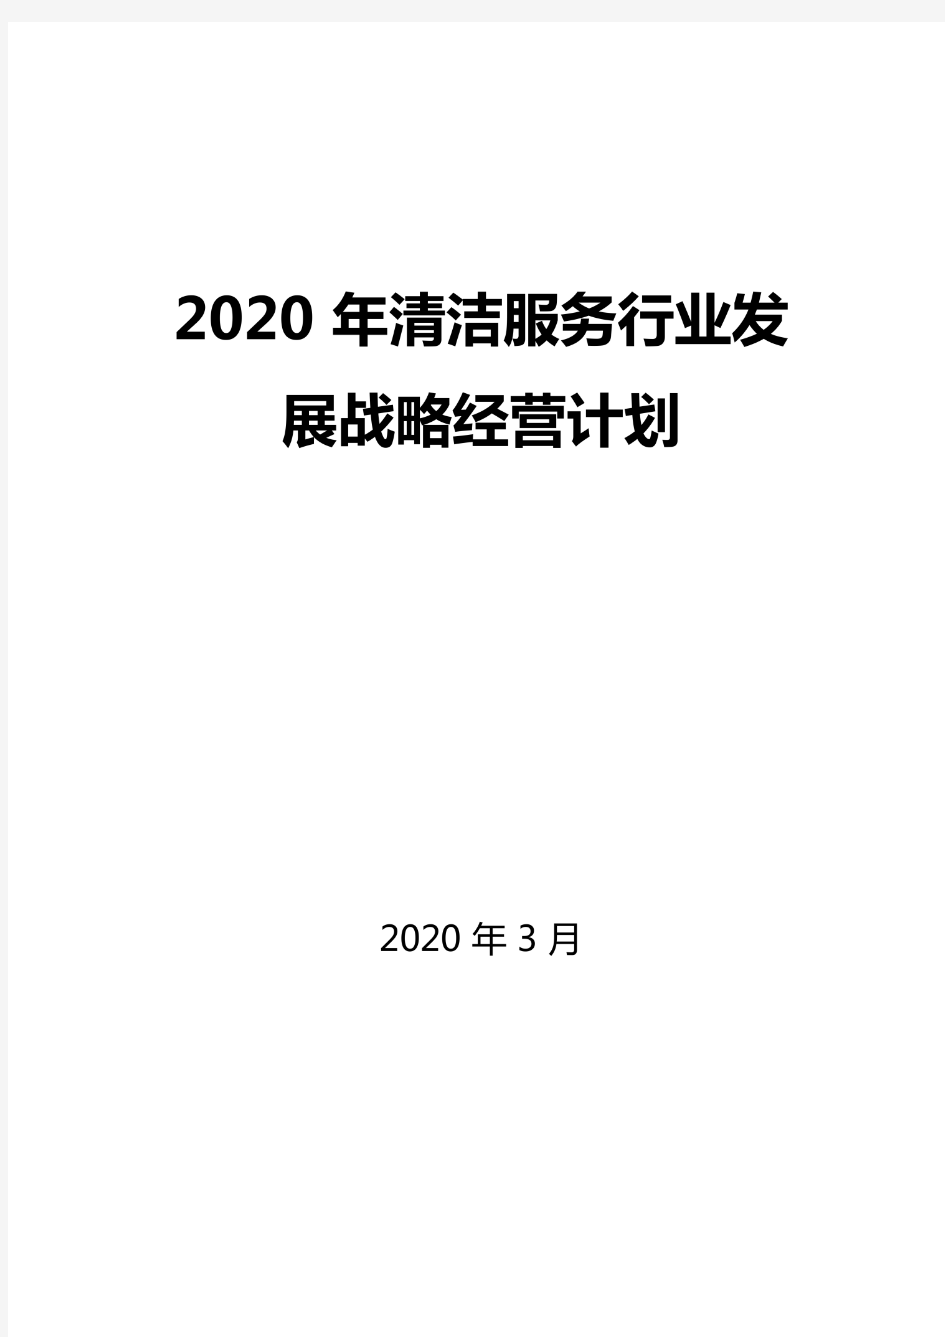 2020清洁服务行业发展战略和经营计划